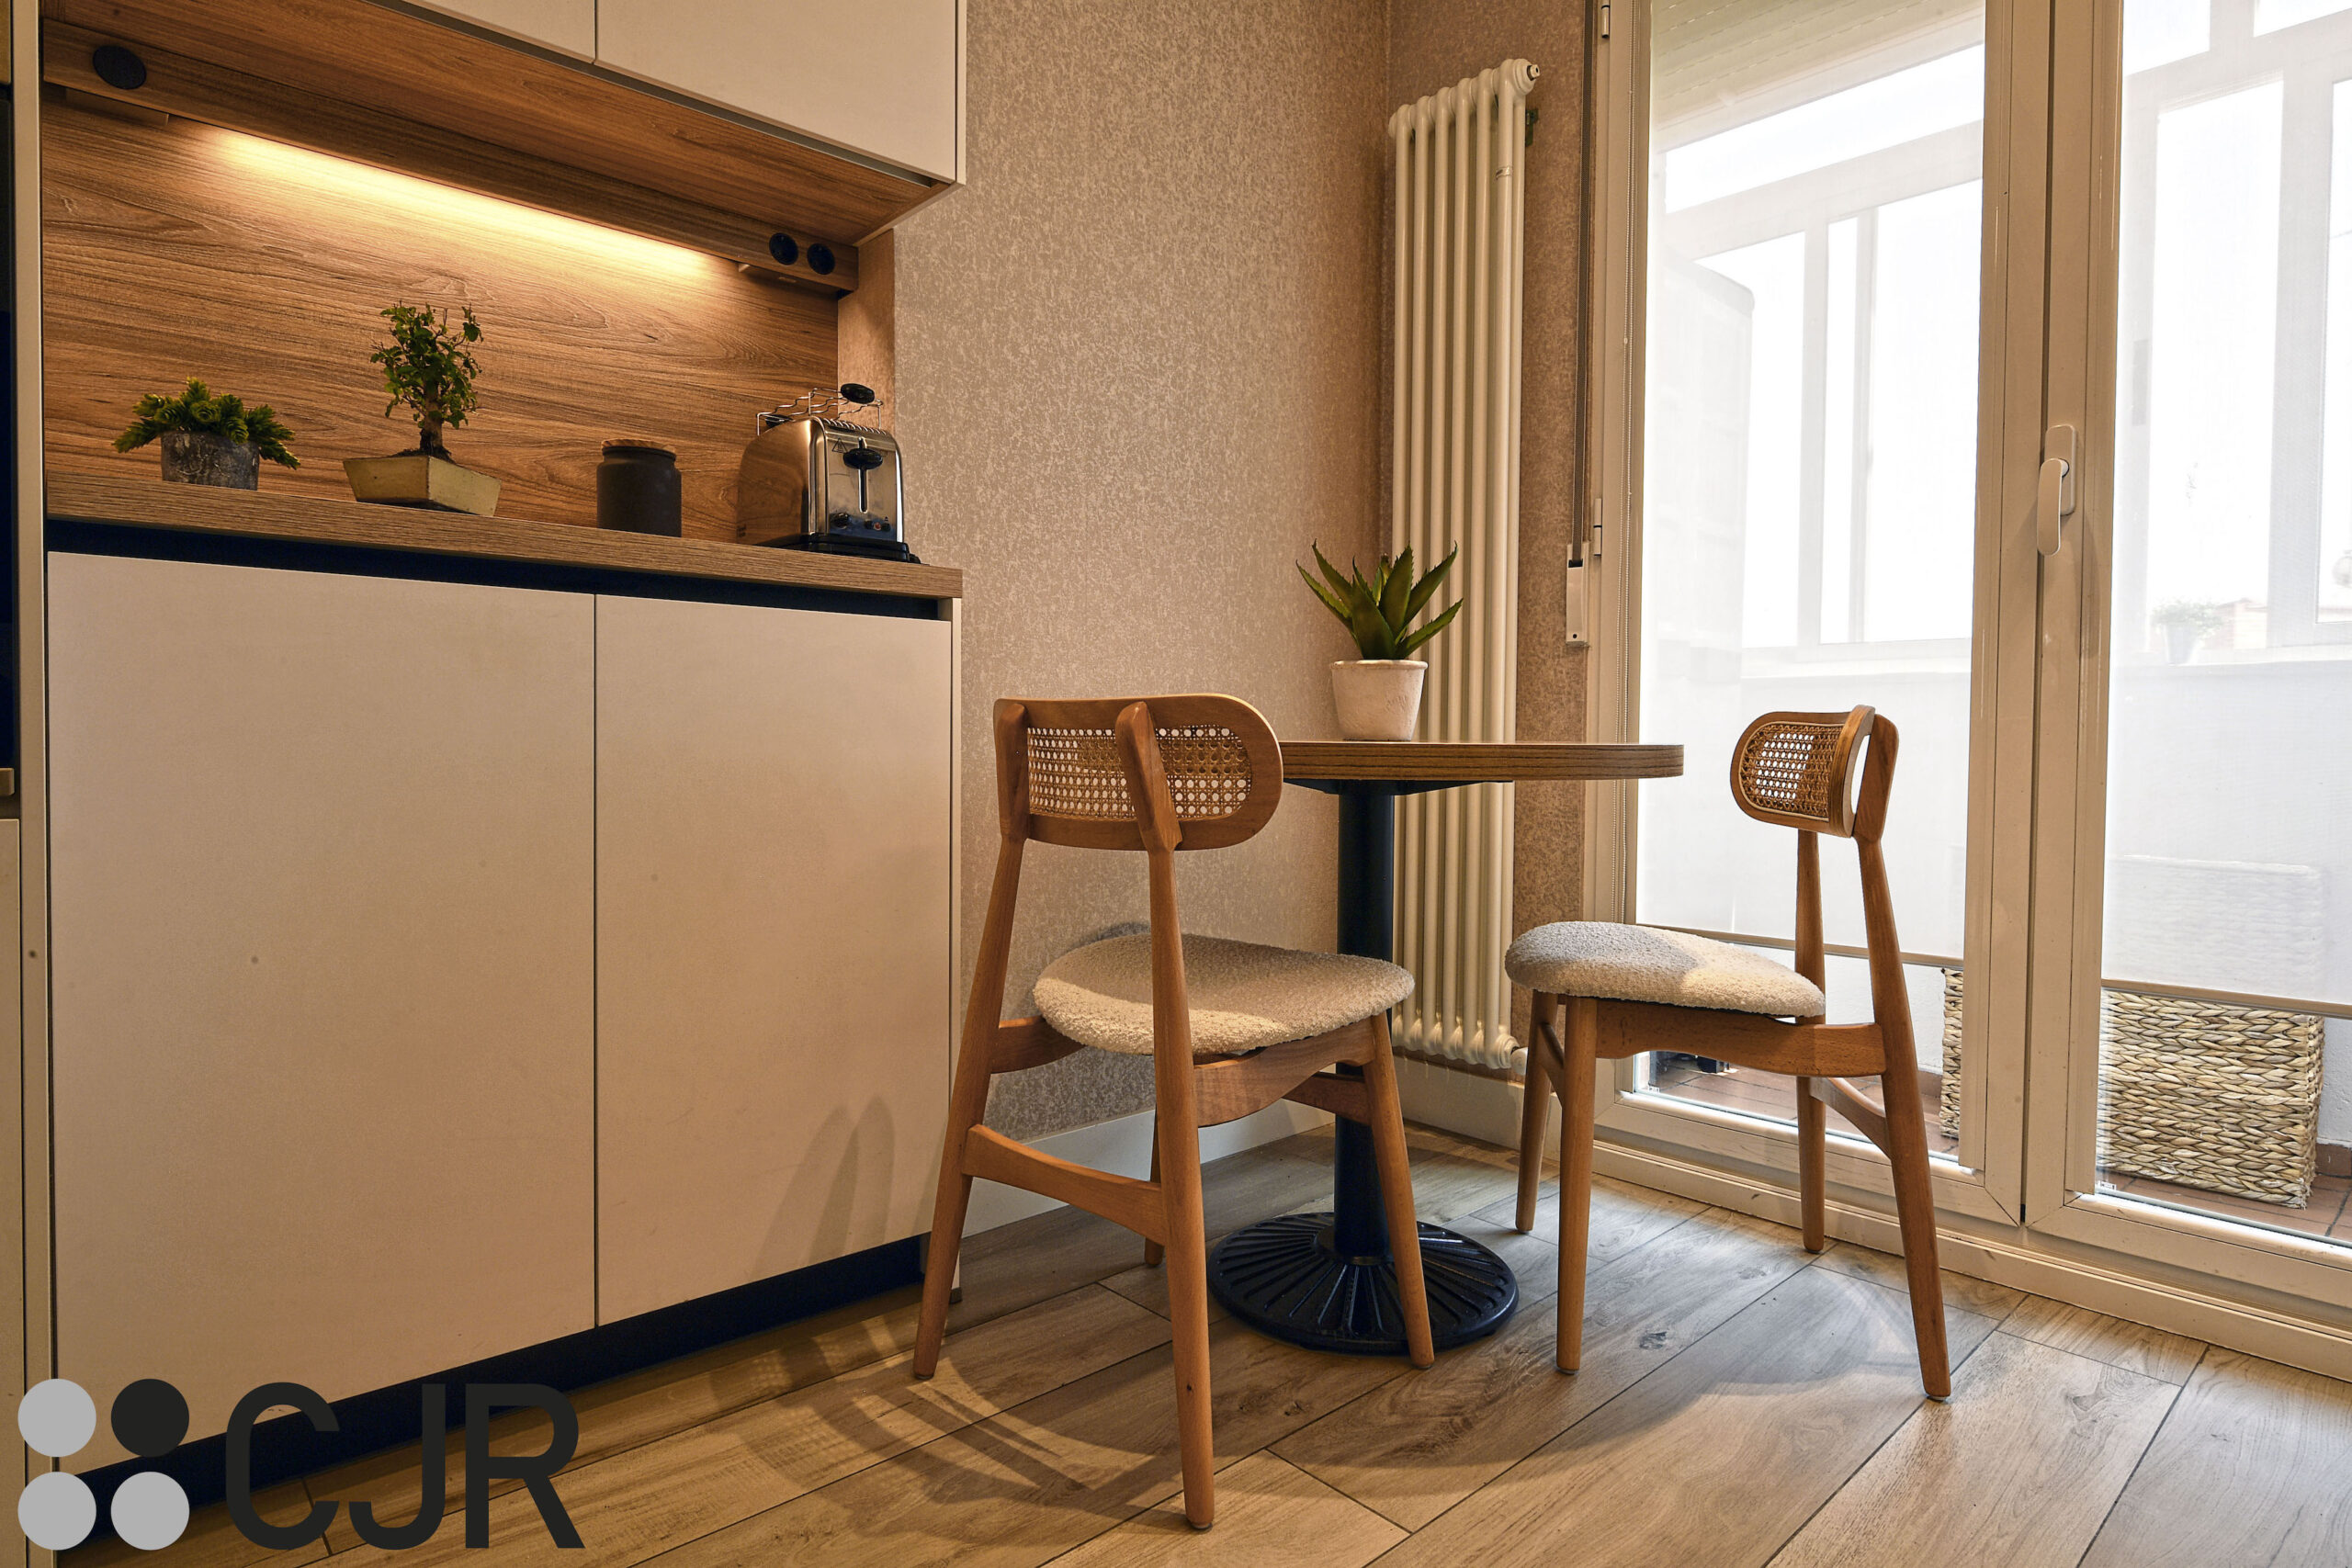 mesa de cocina en zona de office en cocina blanca y madera sillas singular market cocinas cjr